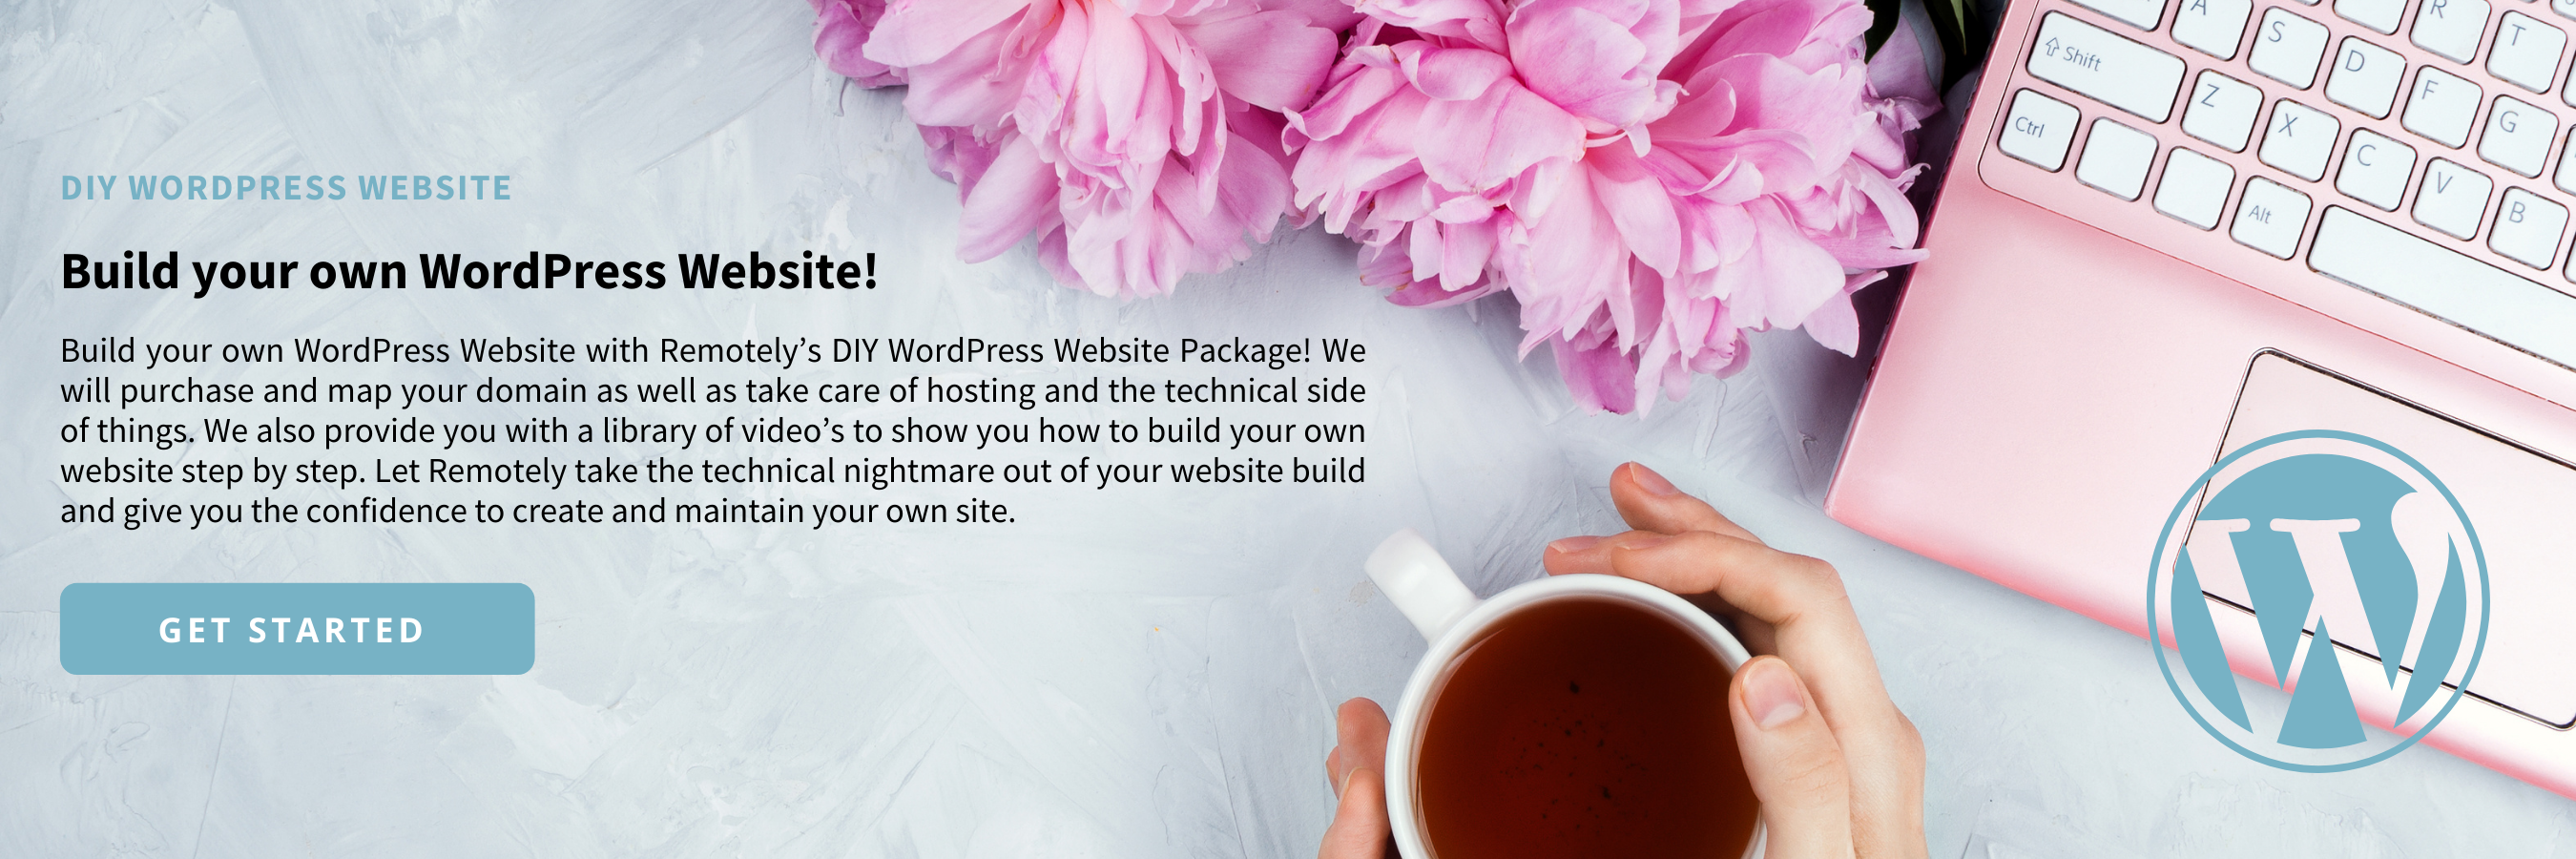 Remotely DIY Wordpress Website Packages